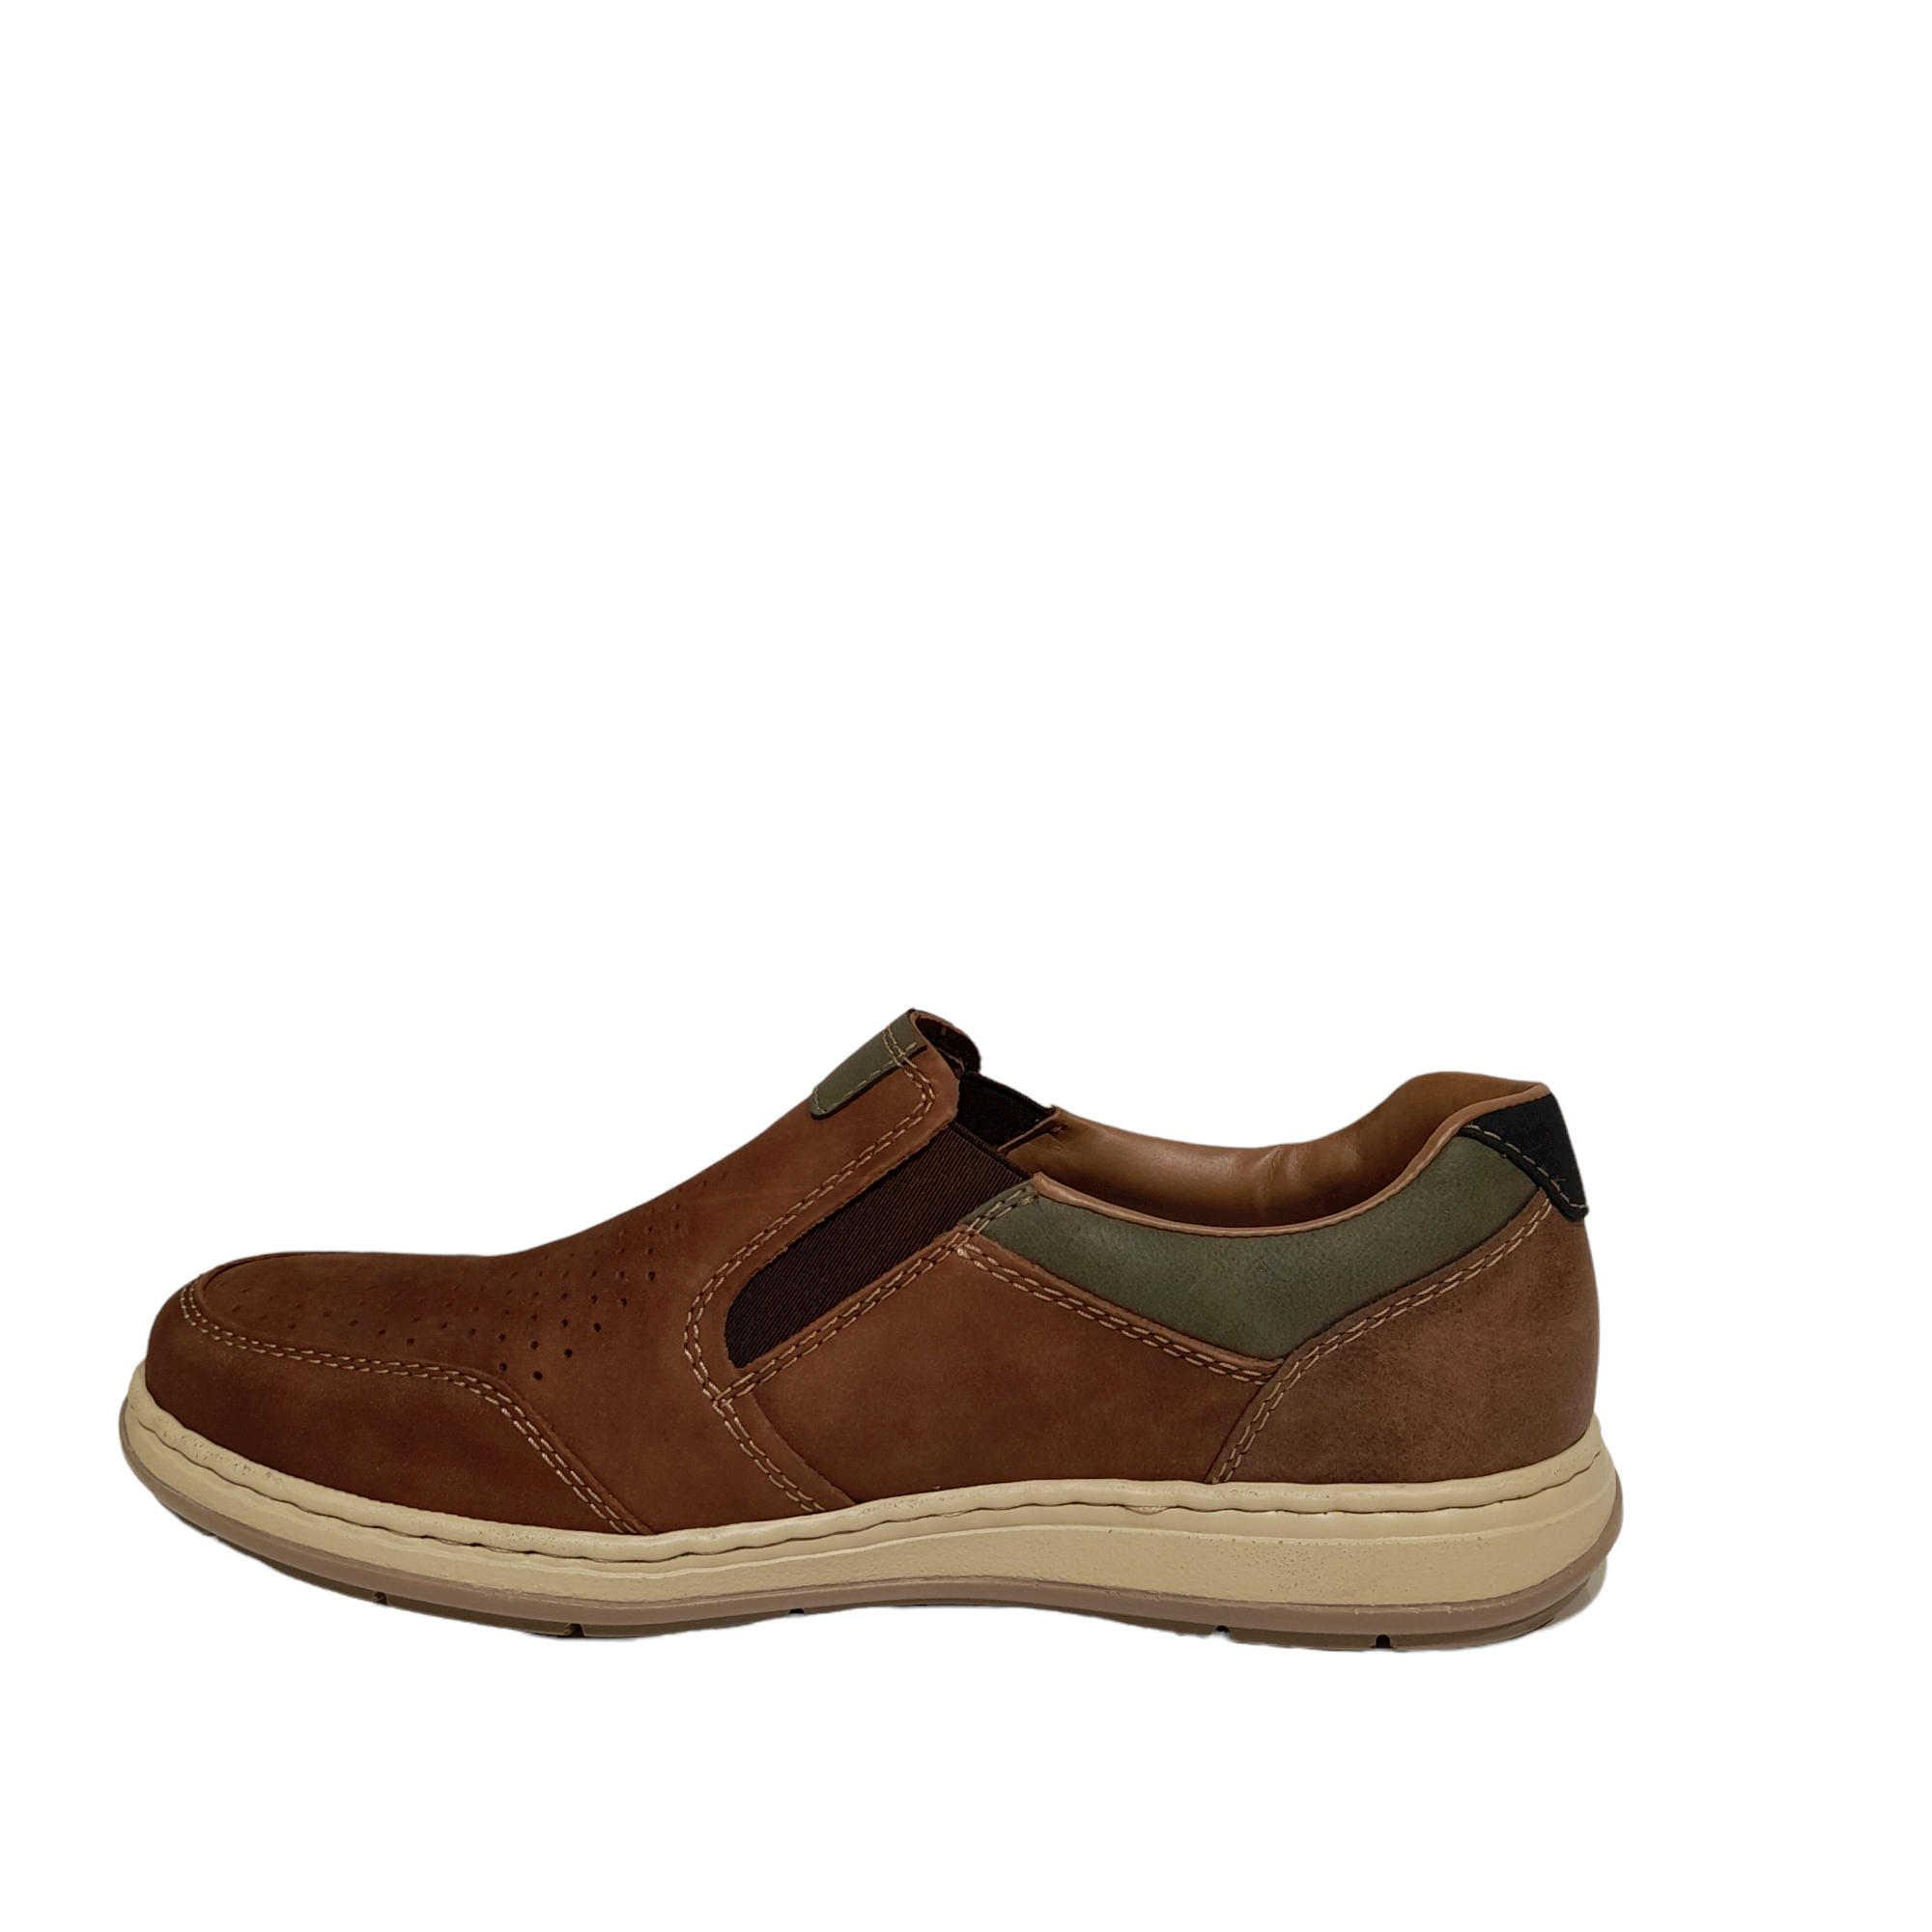 17371 M - shoe&me - Rieker - Shoe - Mens, Shoes